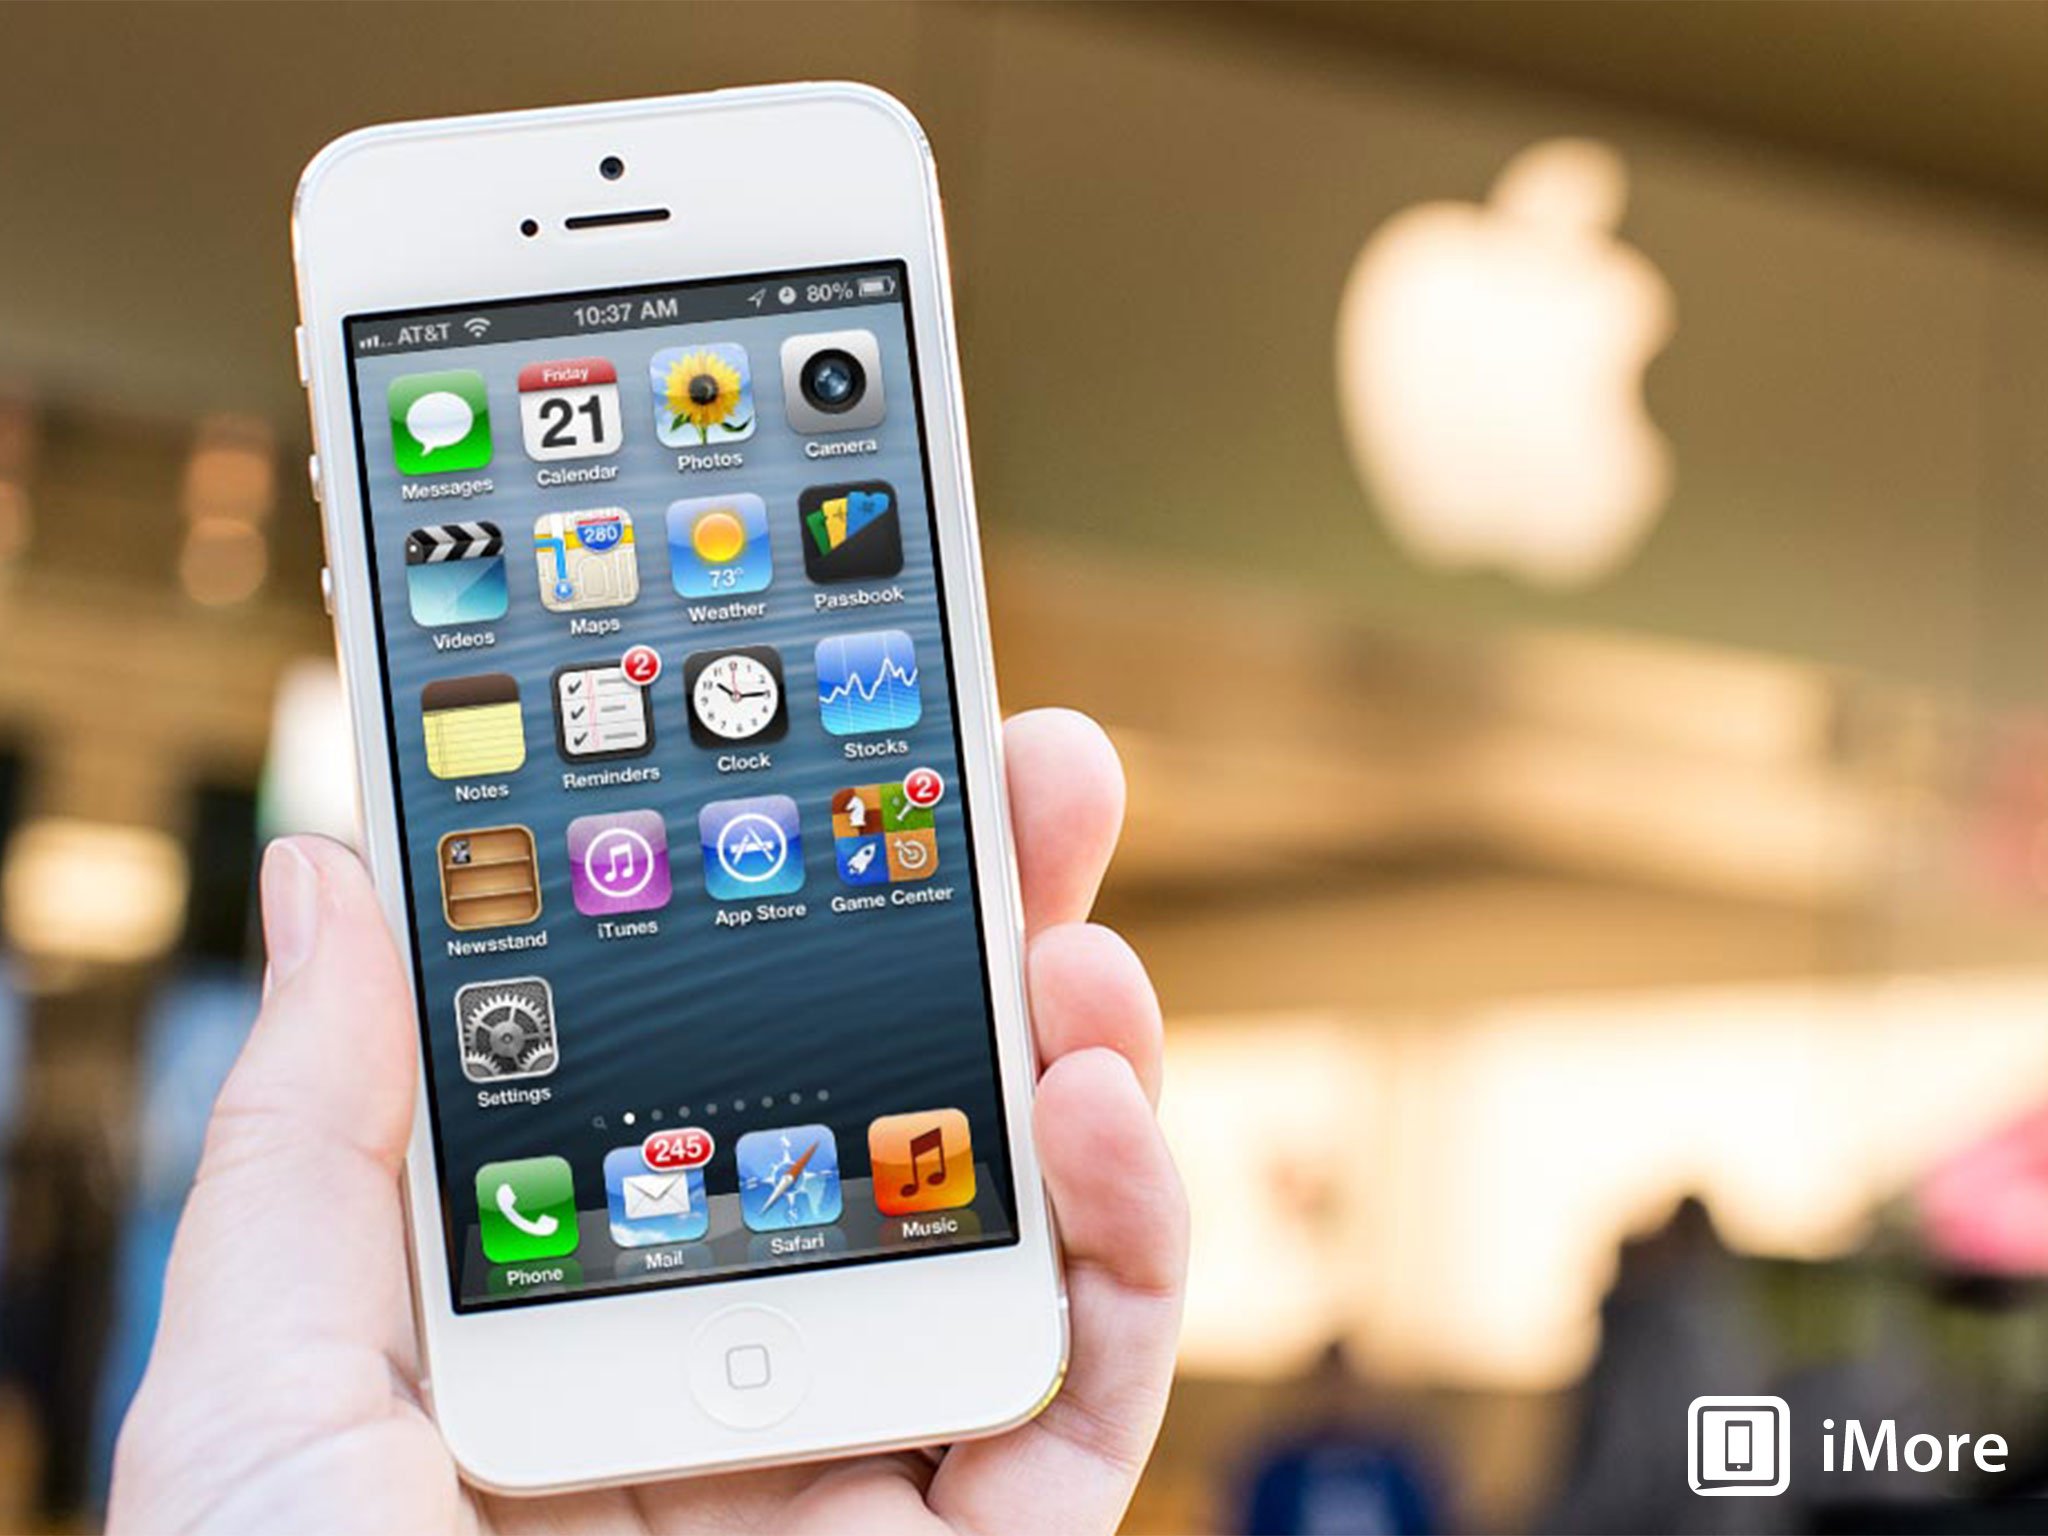 Onderzoek het Zich verzetten tegen Wederzijds Update your iPhone 5 to iOS 10.3.4 before November 3 or else... | iMore